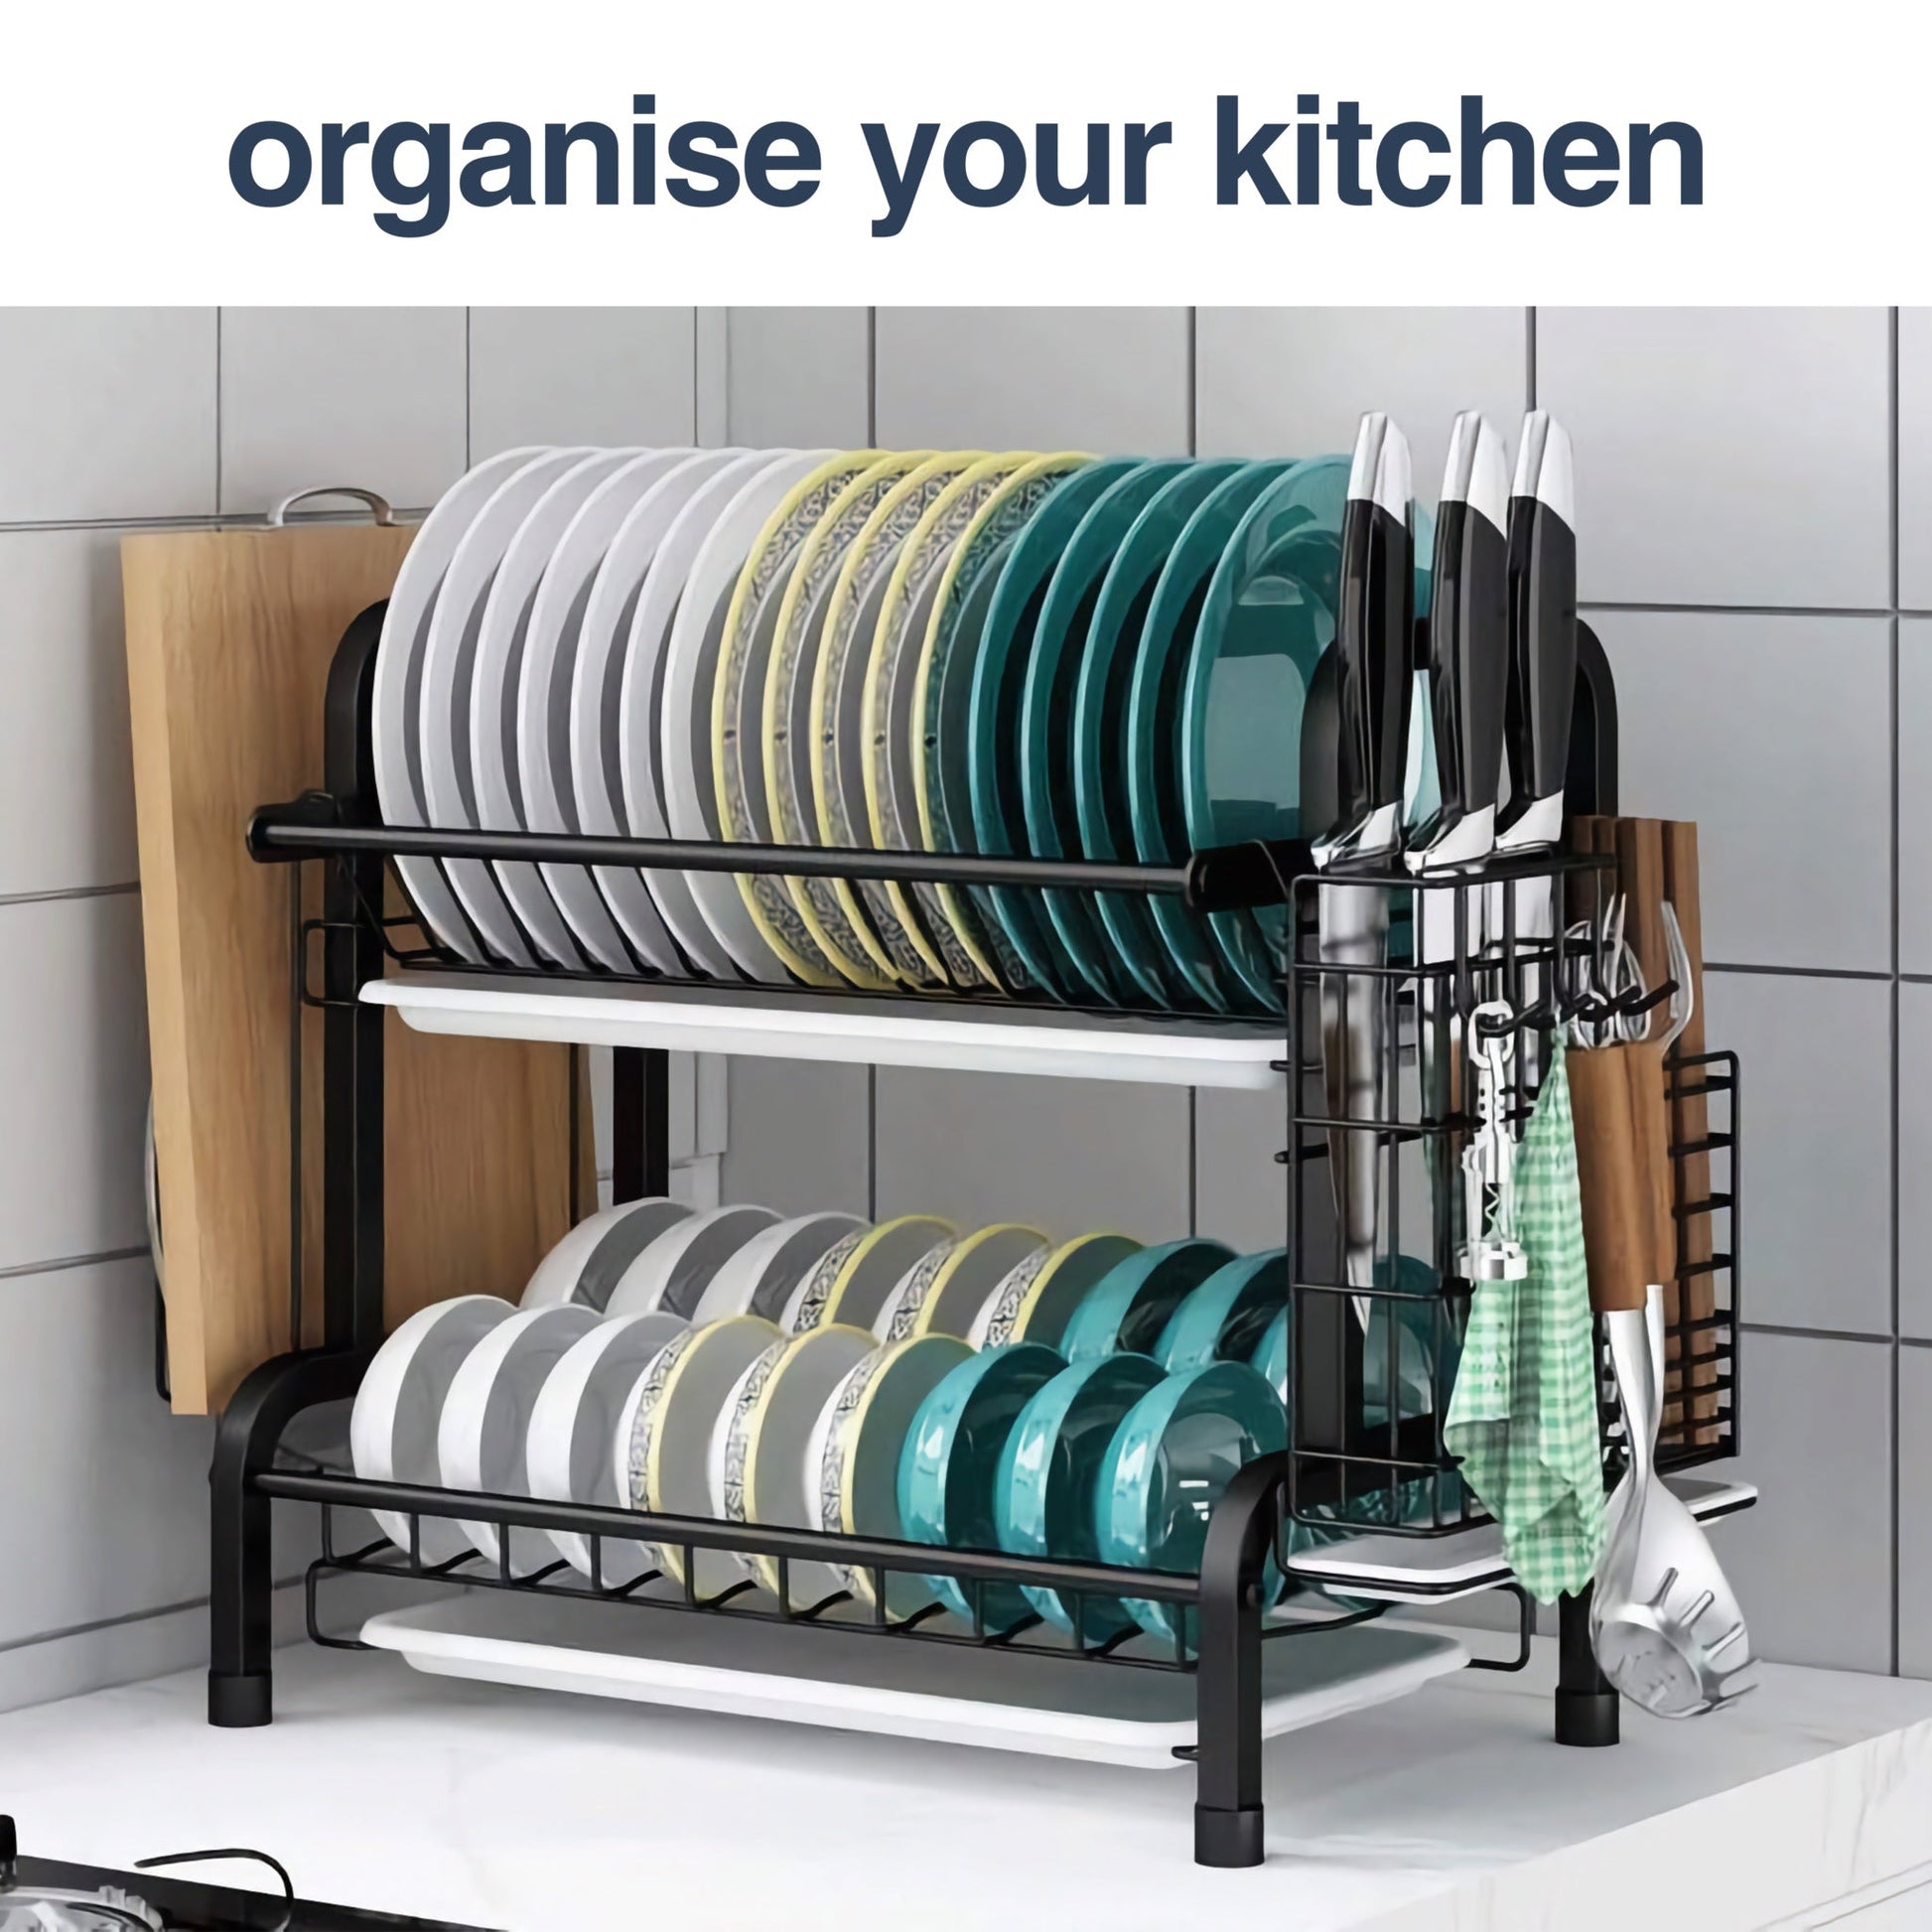 Dish Drying Rack - Dish Racks & Drain Boards - The Organisy